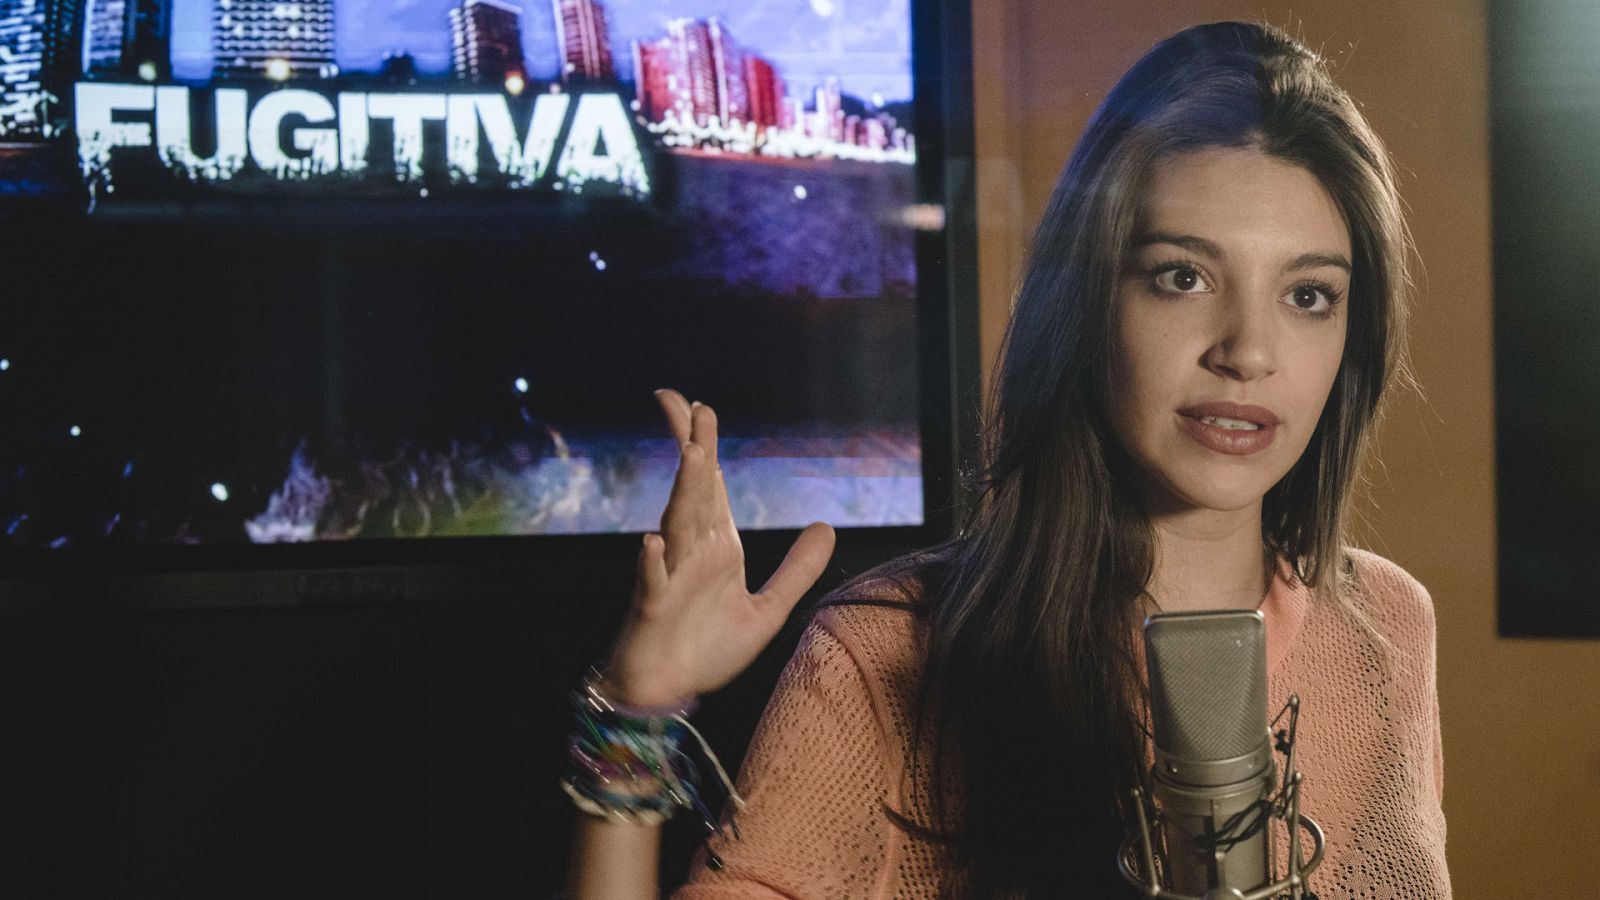 Fugitiva - El videoclip de 'Fugitiva' con Ana Guerra